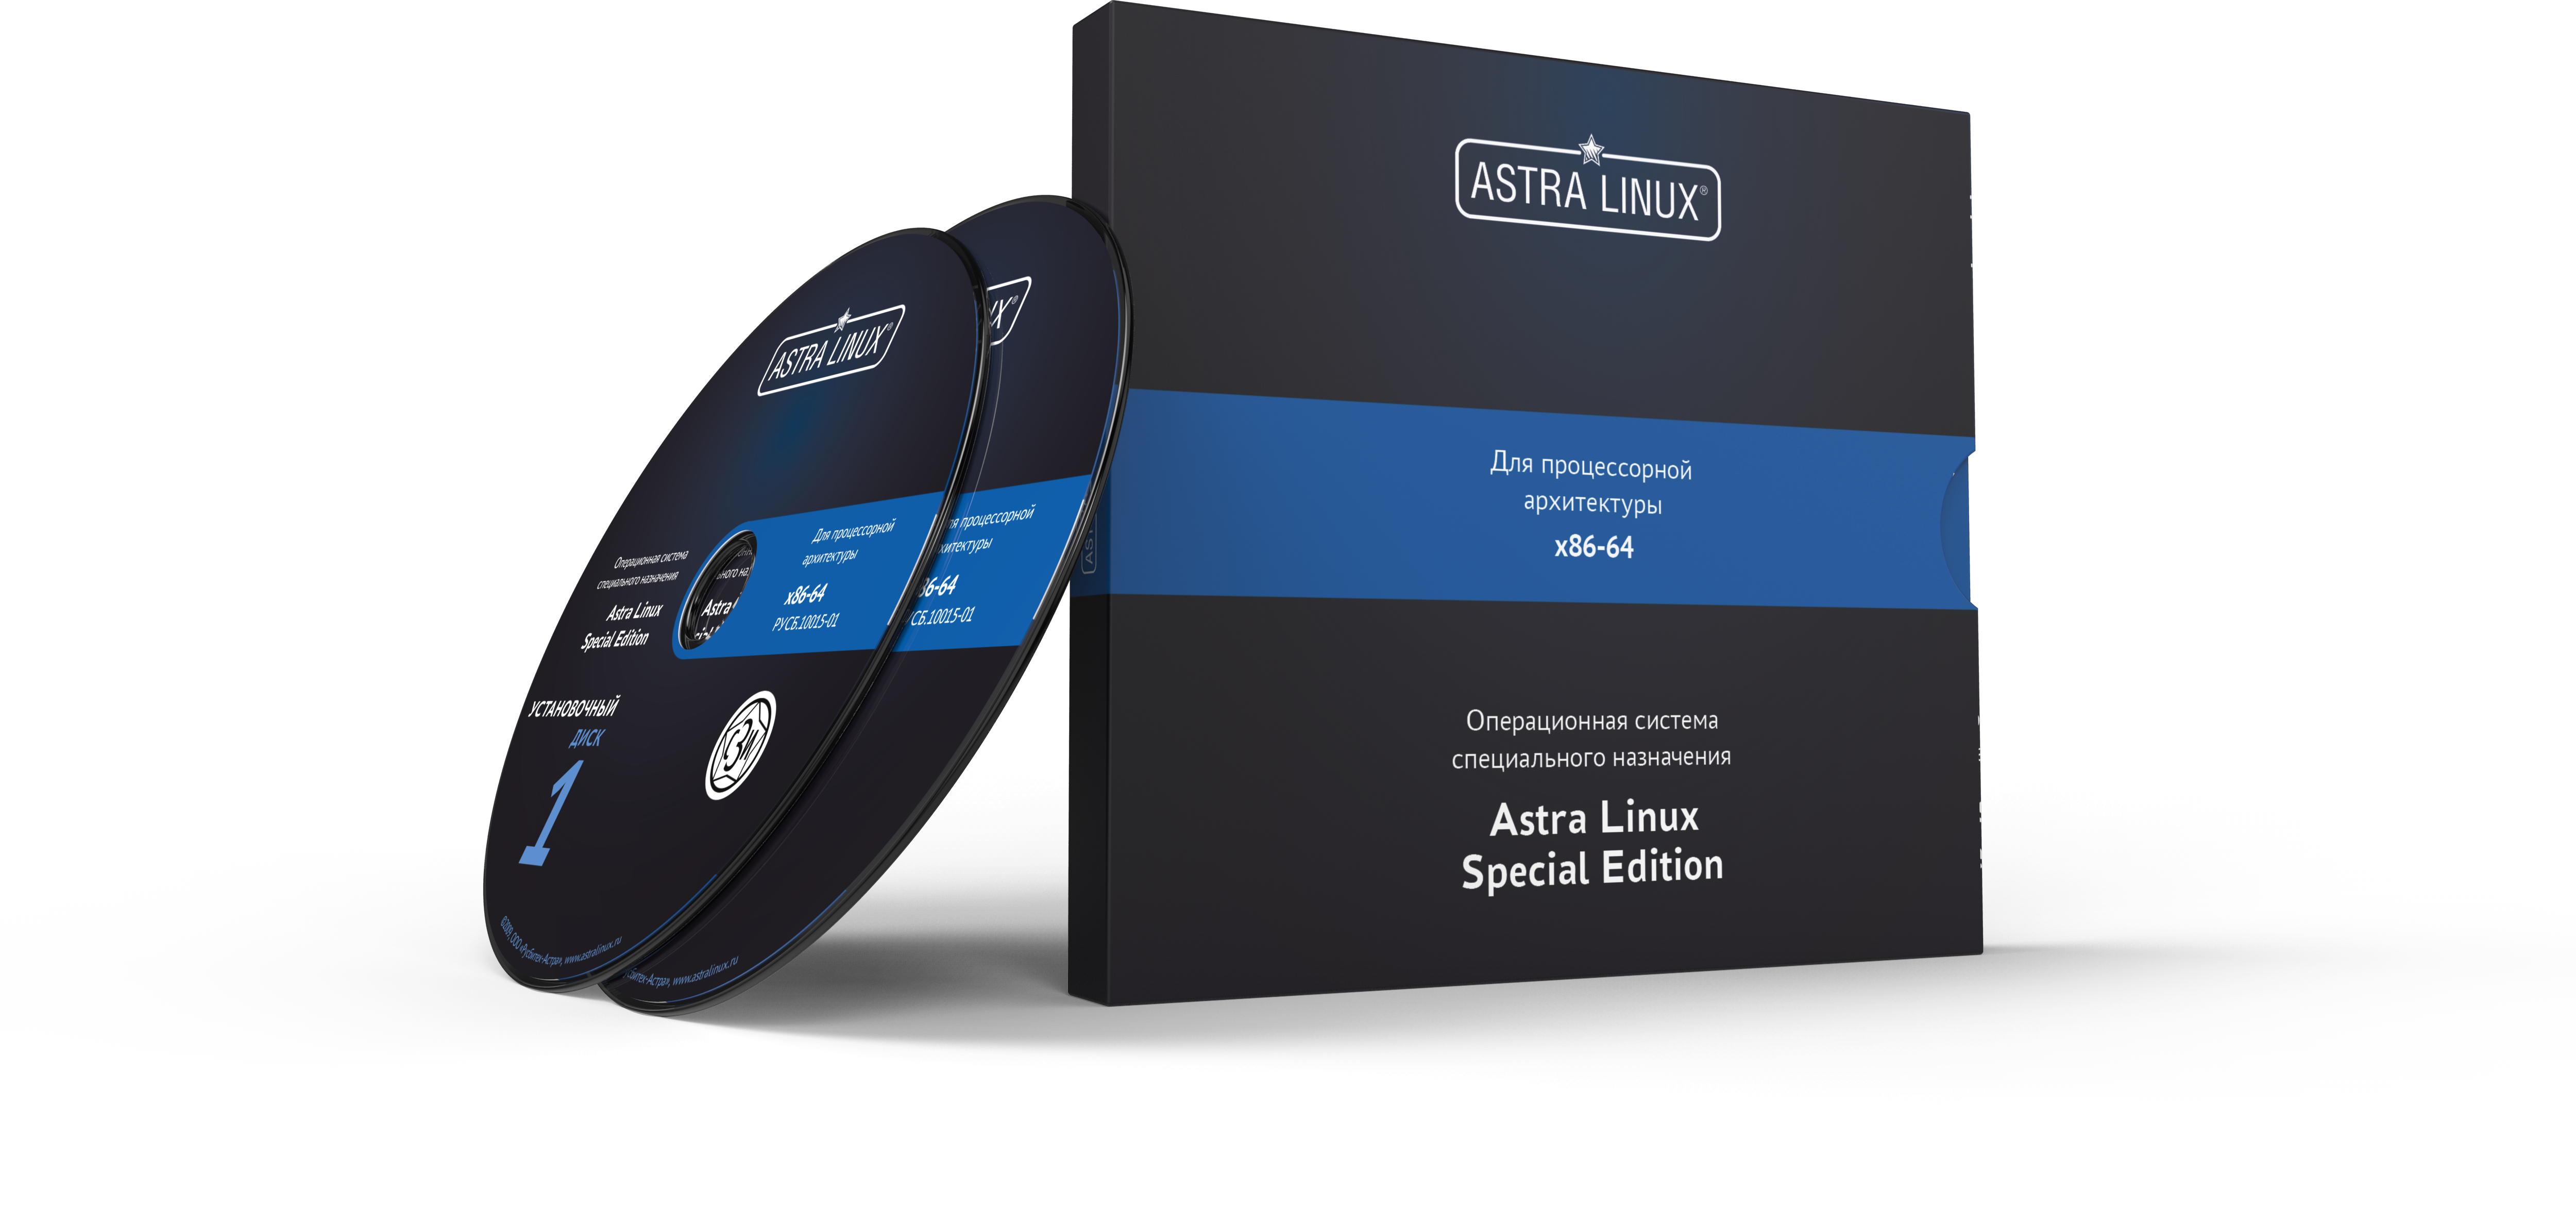 Astra Linux Special Edition 1.7 - Смоленск, "Максимальный", диск, без огр. срока, ТП "Привилегированная" на 36 мес.